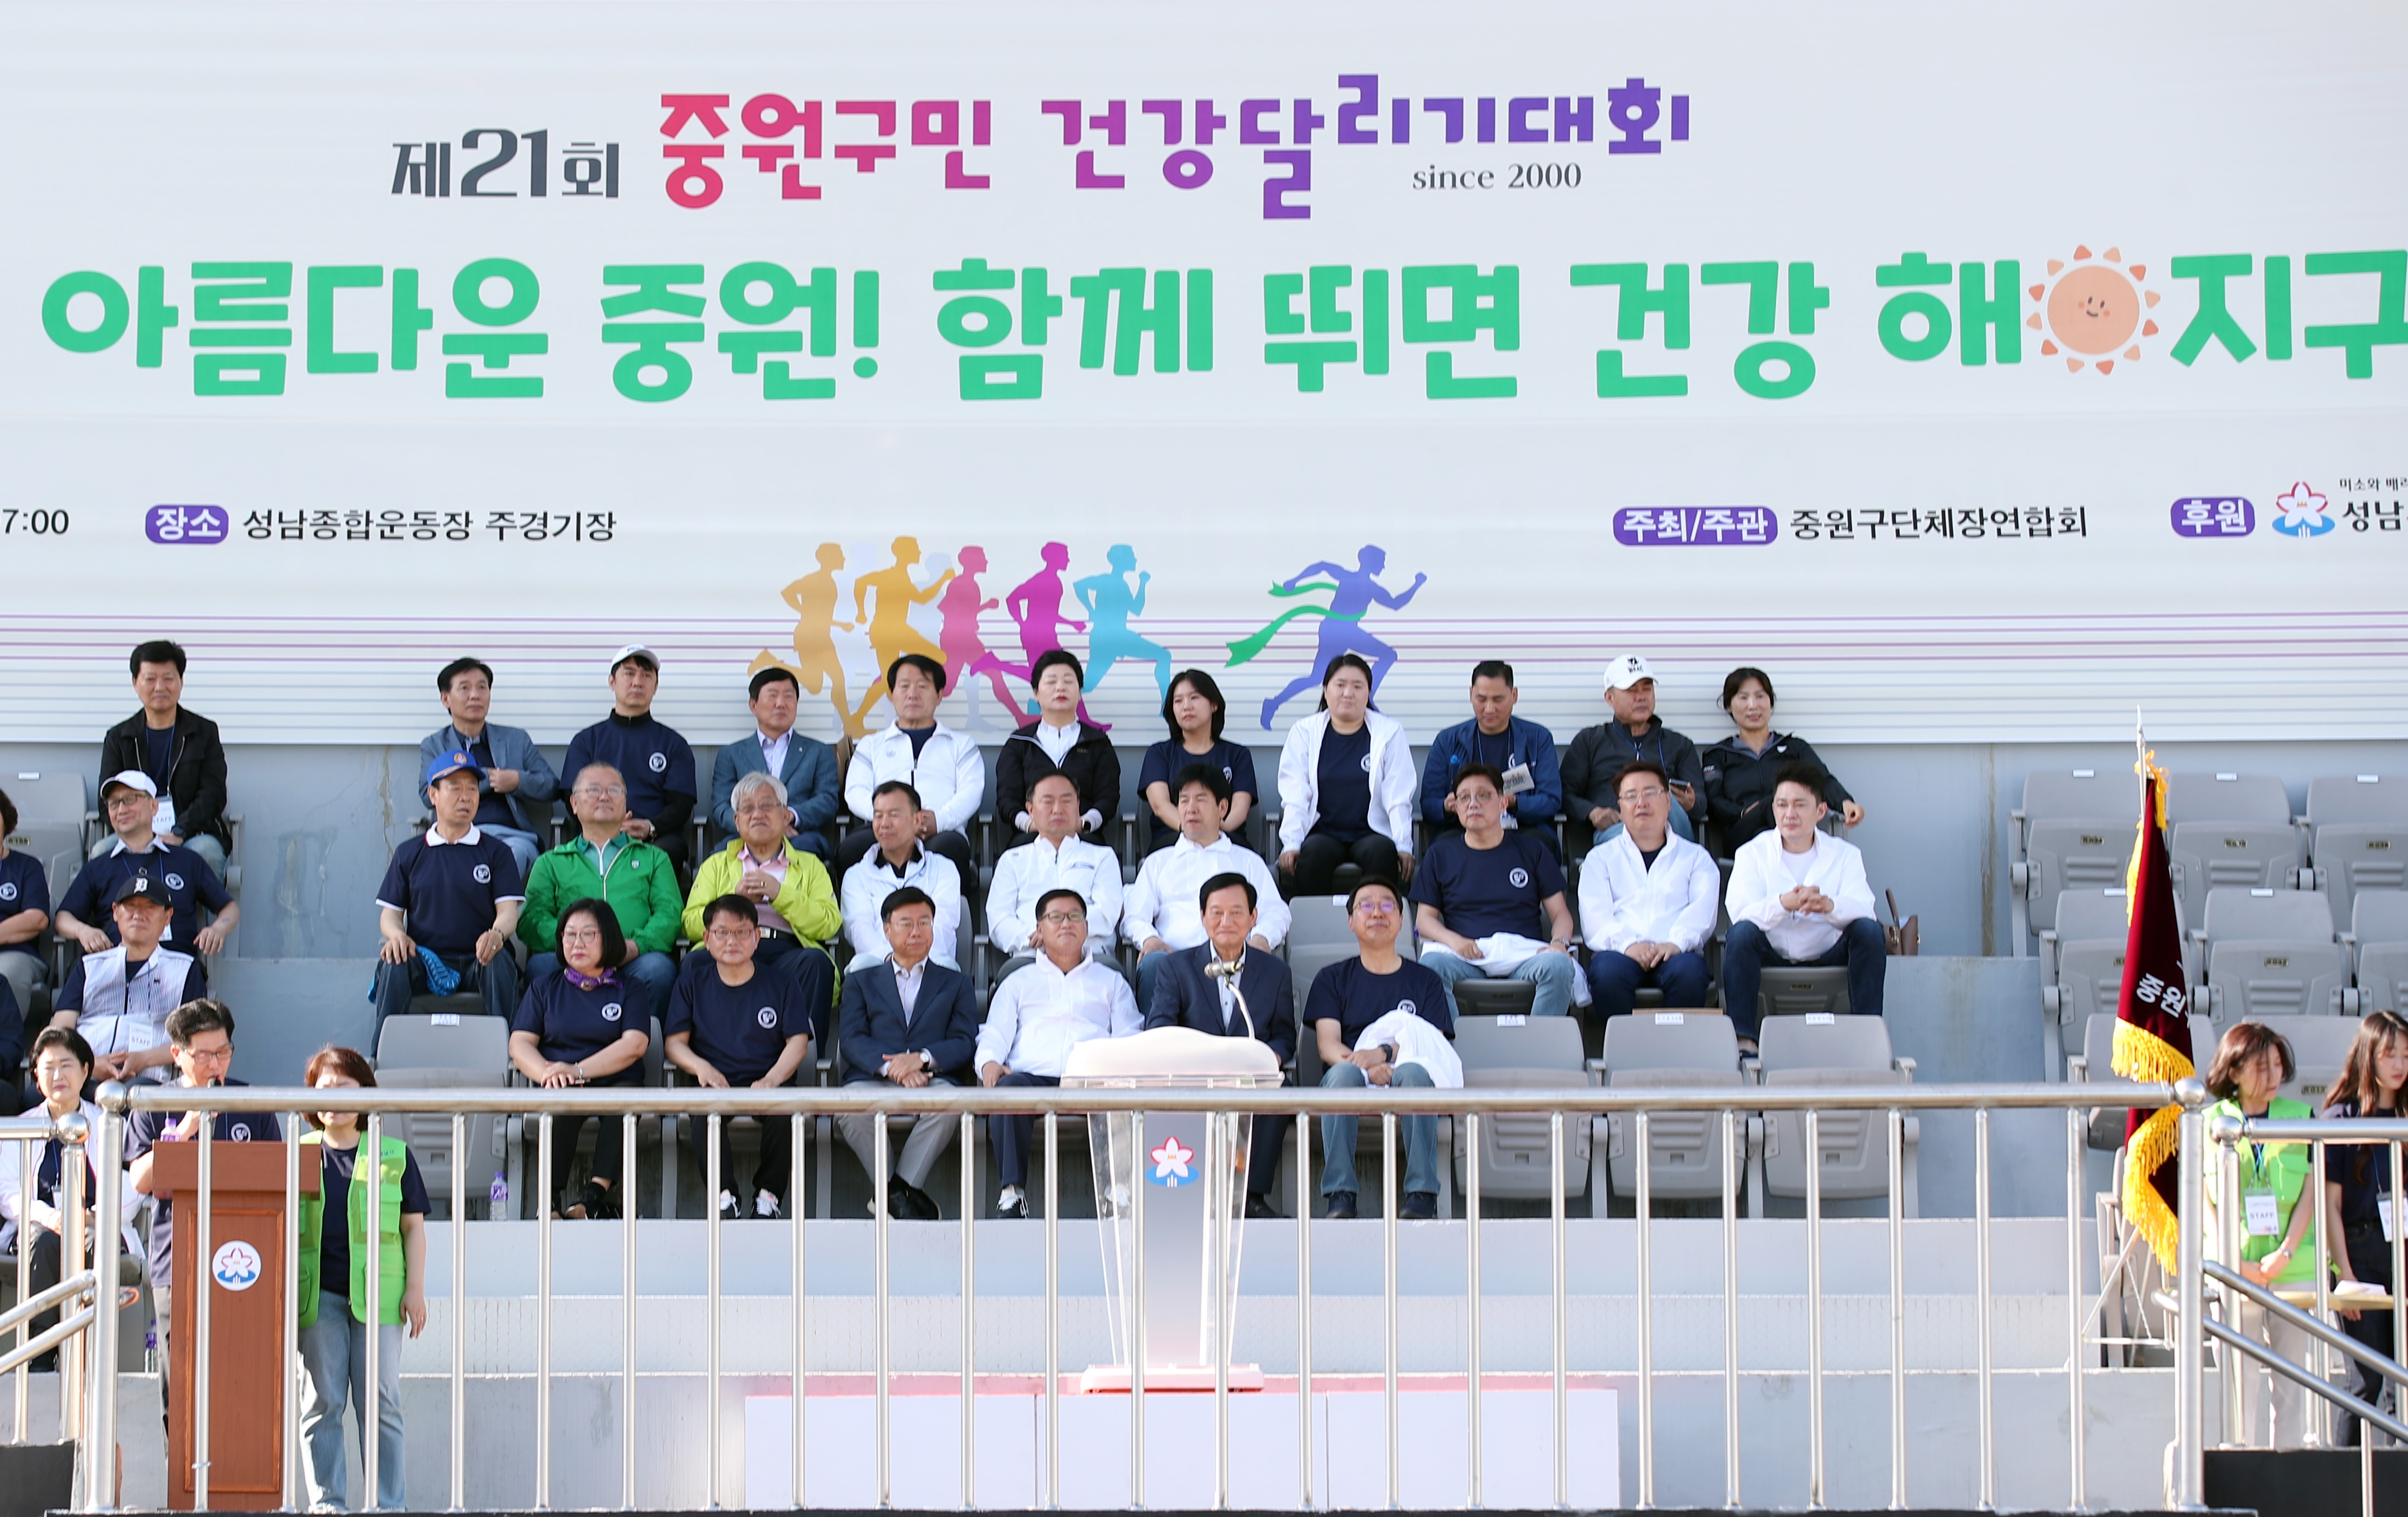  제21회 중원구민 건강달리기대회  - 9